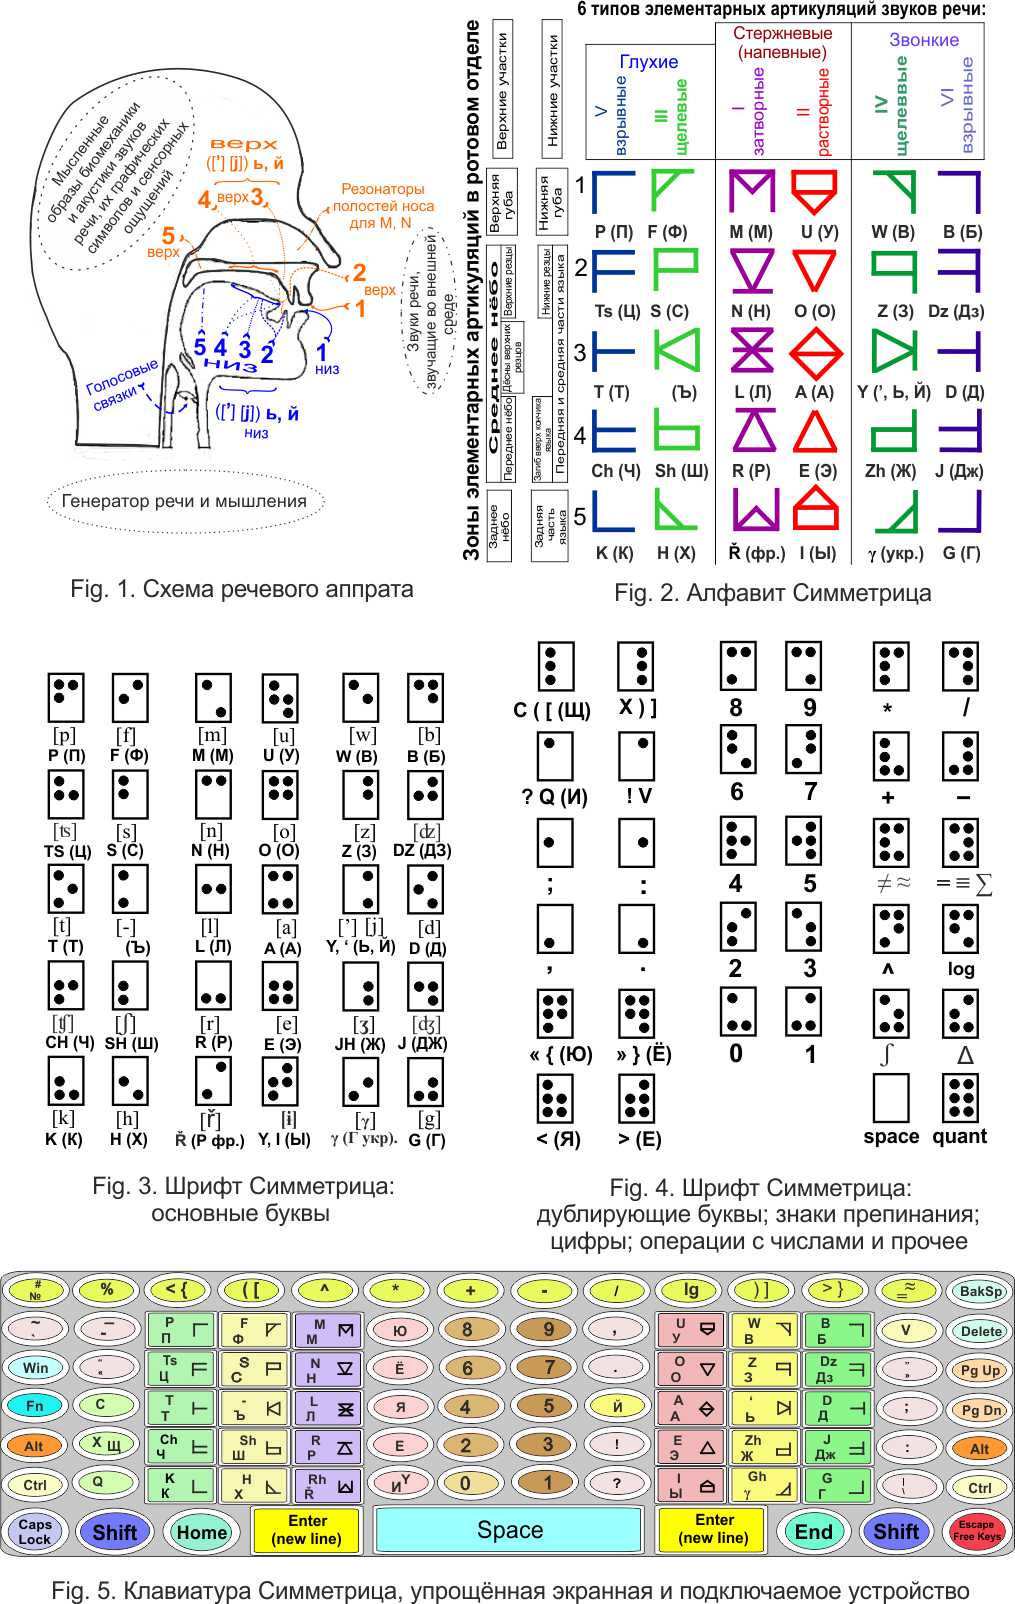 Schema di articolazione per suoni vocali; Simmetria di alfabeto e simmetria in rilievo